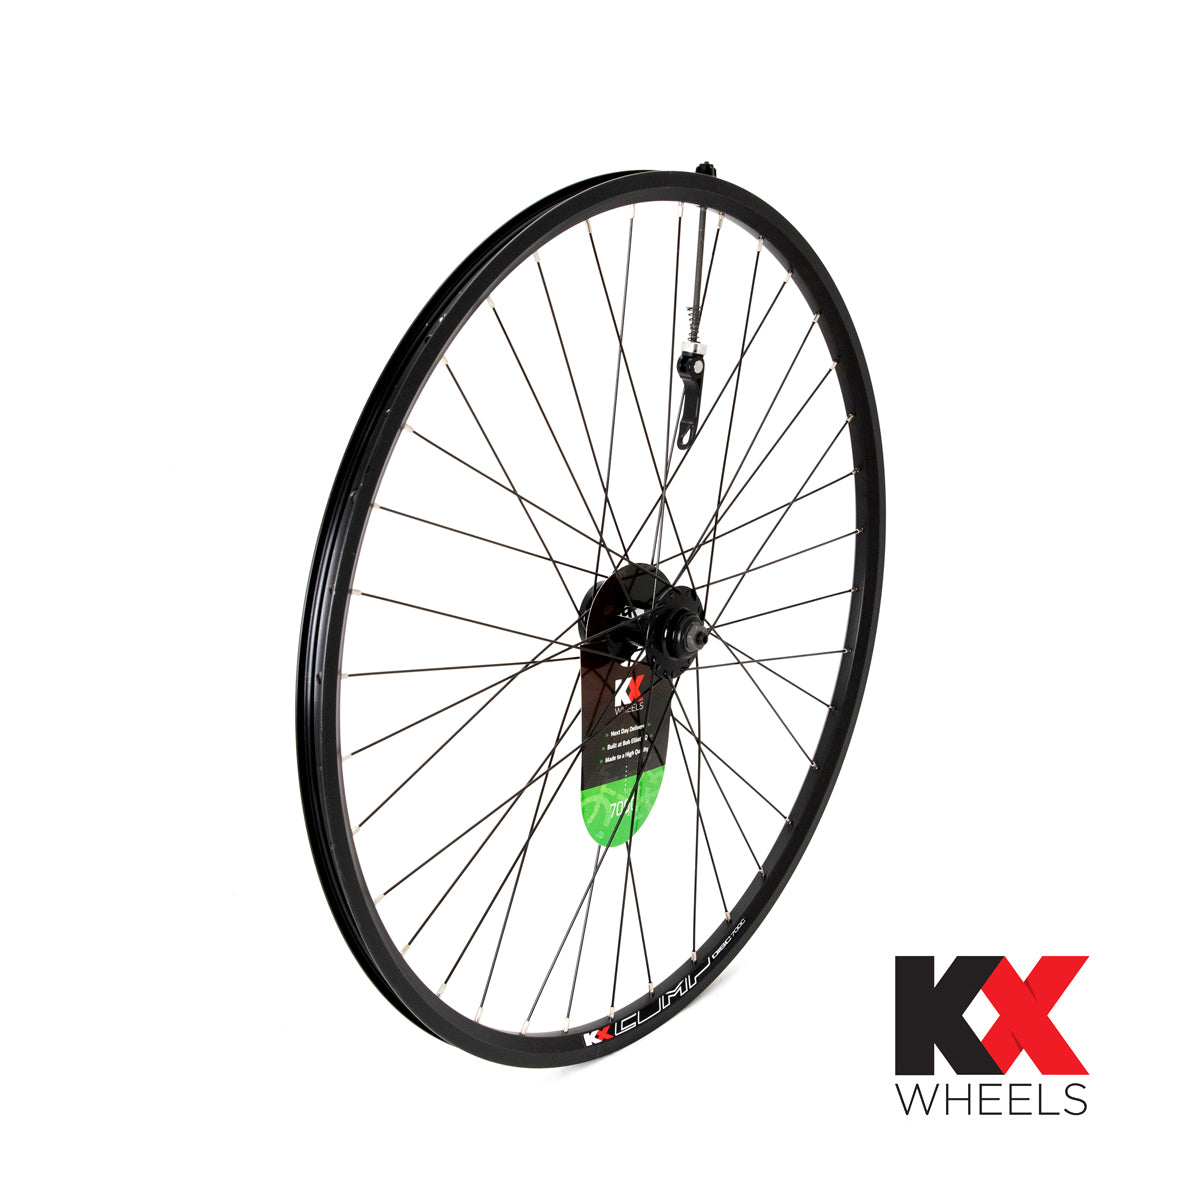 KX Wheels Hybrid Double Wall QR Disc 700c Front Bike Wheel